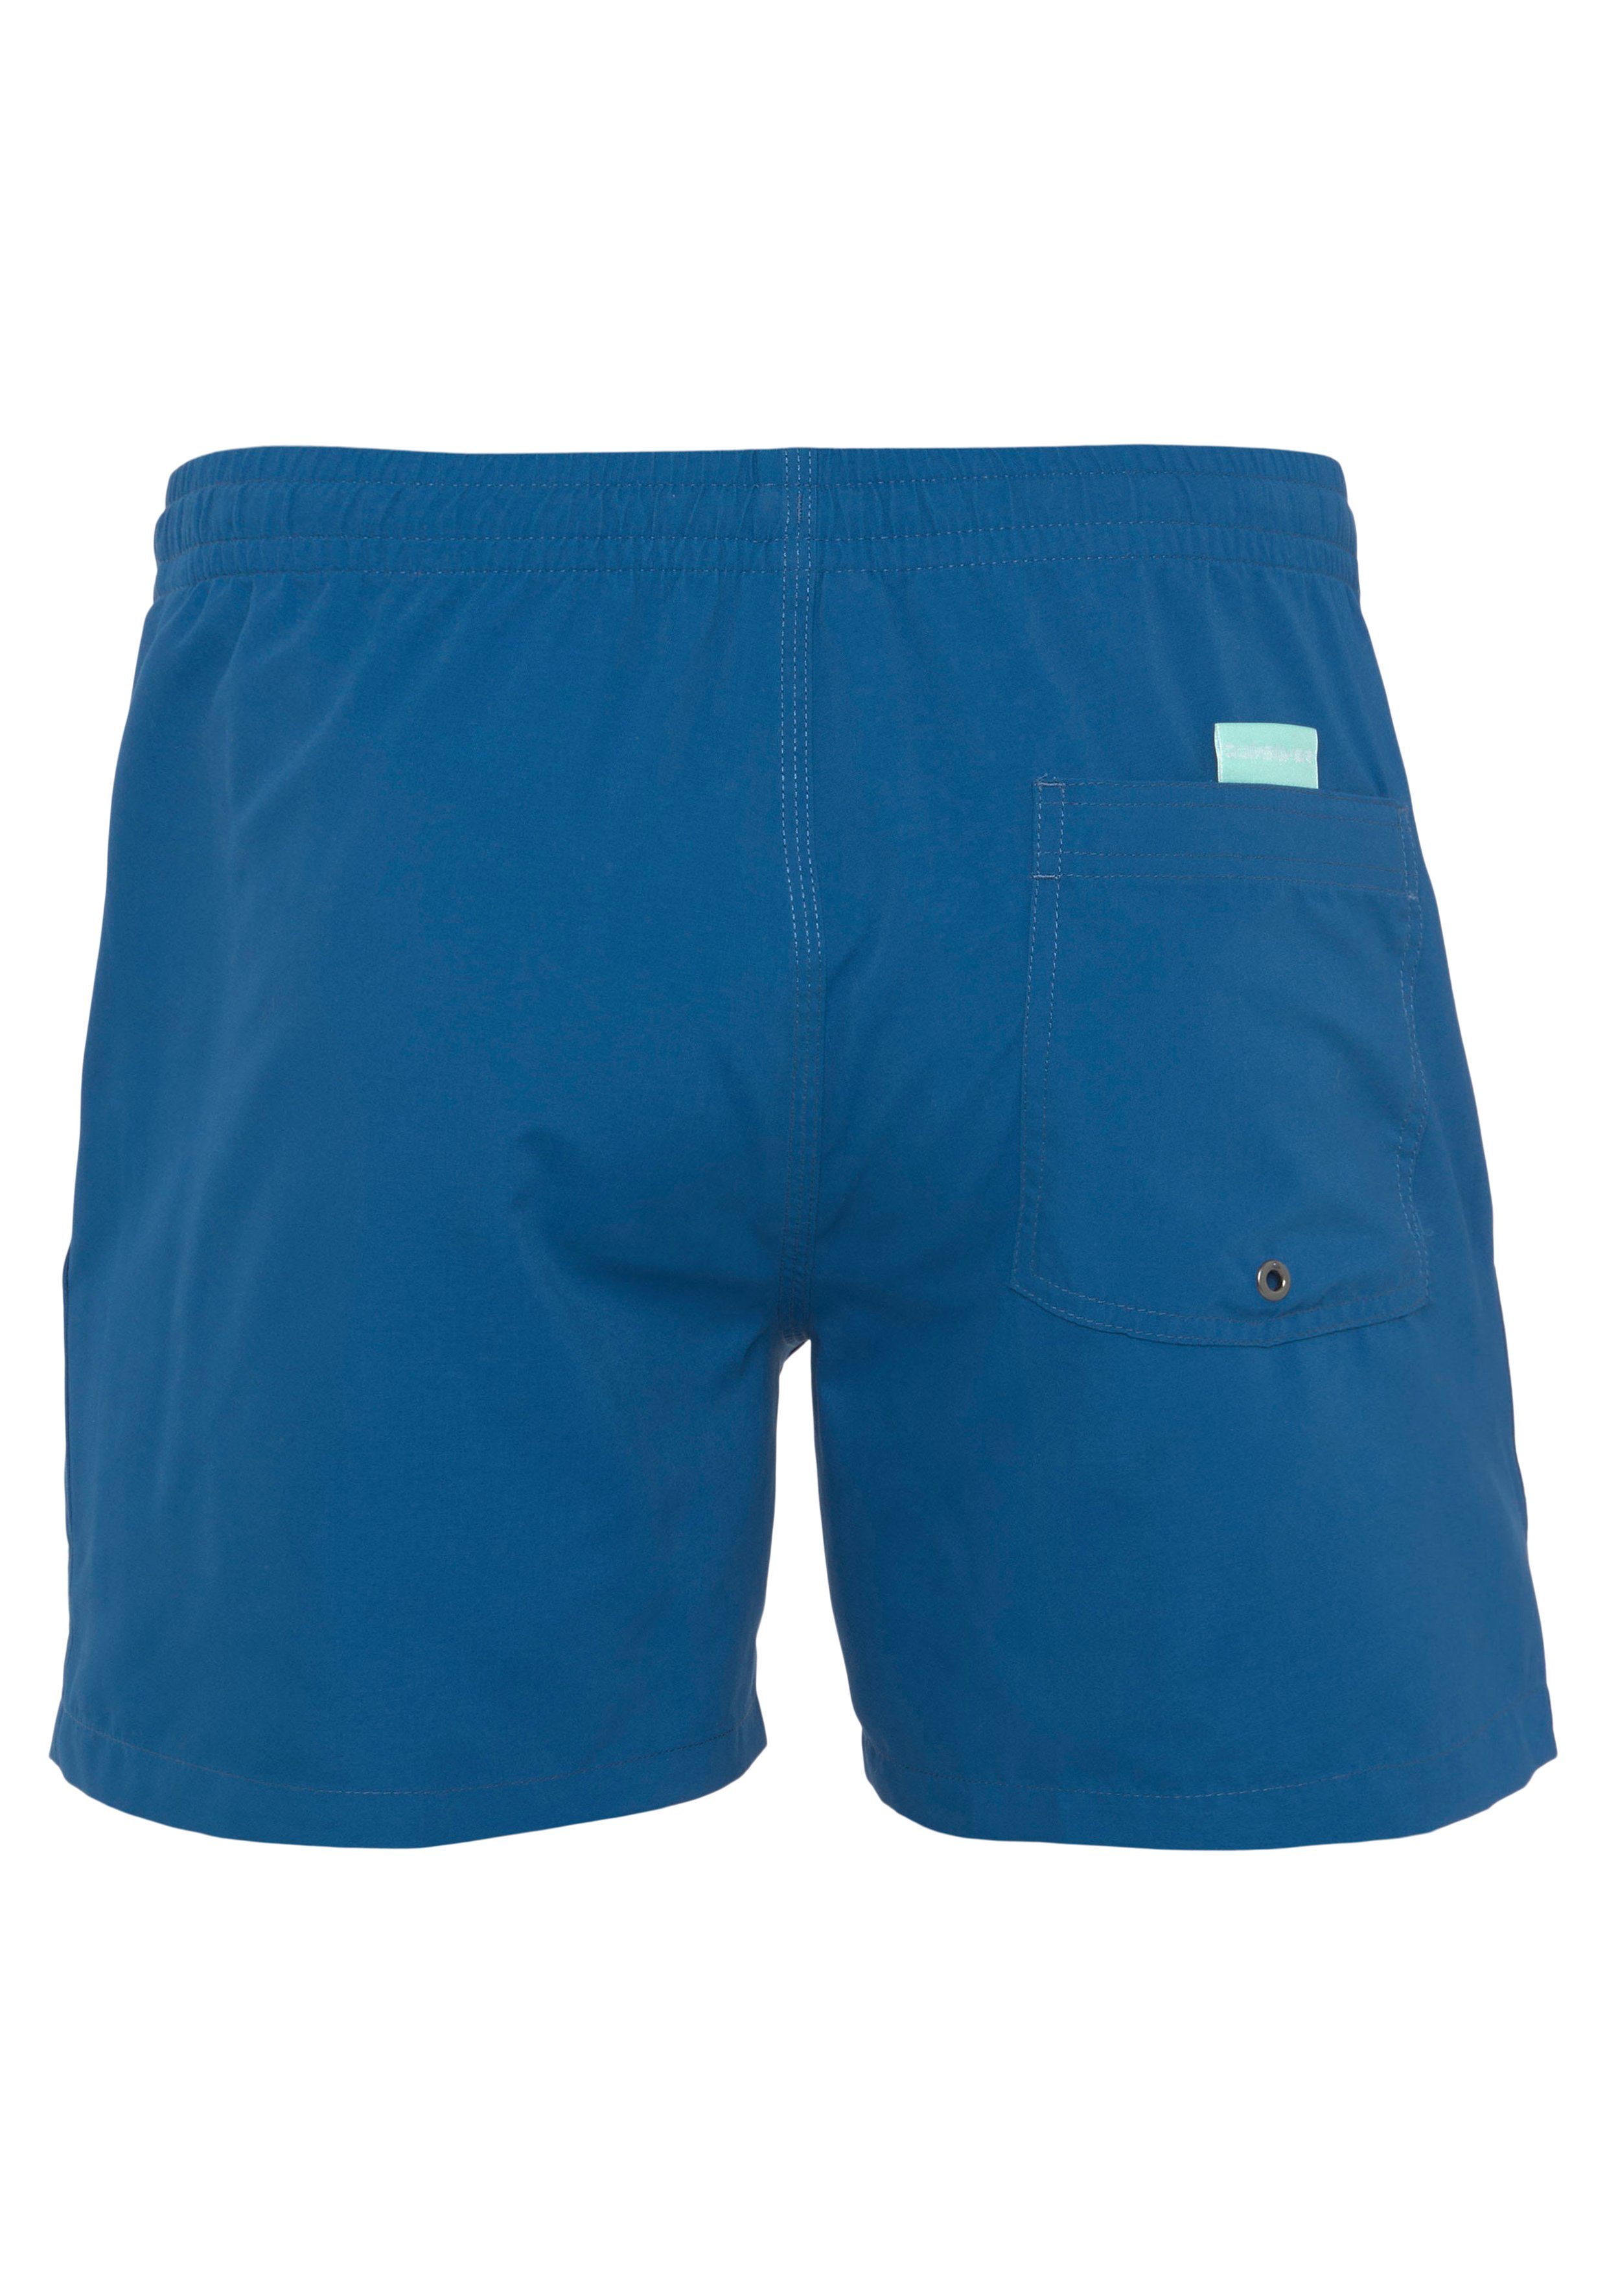 Quiksilver Badeshorts Herren Beach Shorts Swim blau Shorts